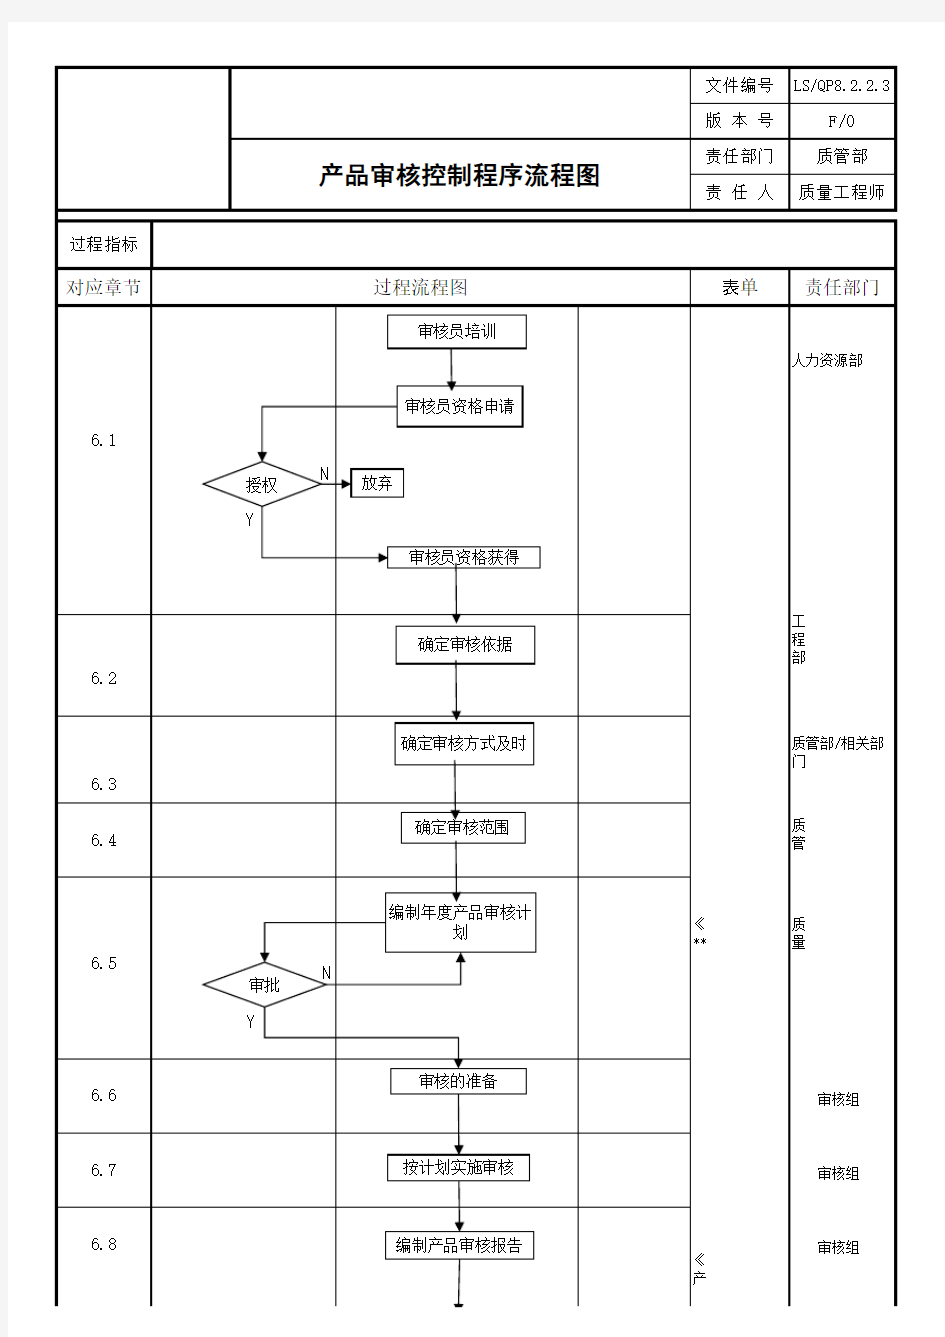 产品审核控制程序过程流程图【ISO9001程序表格记录】 